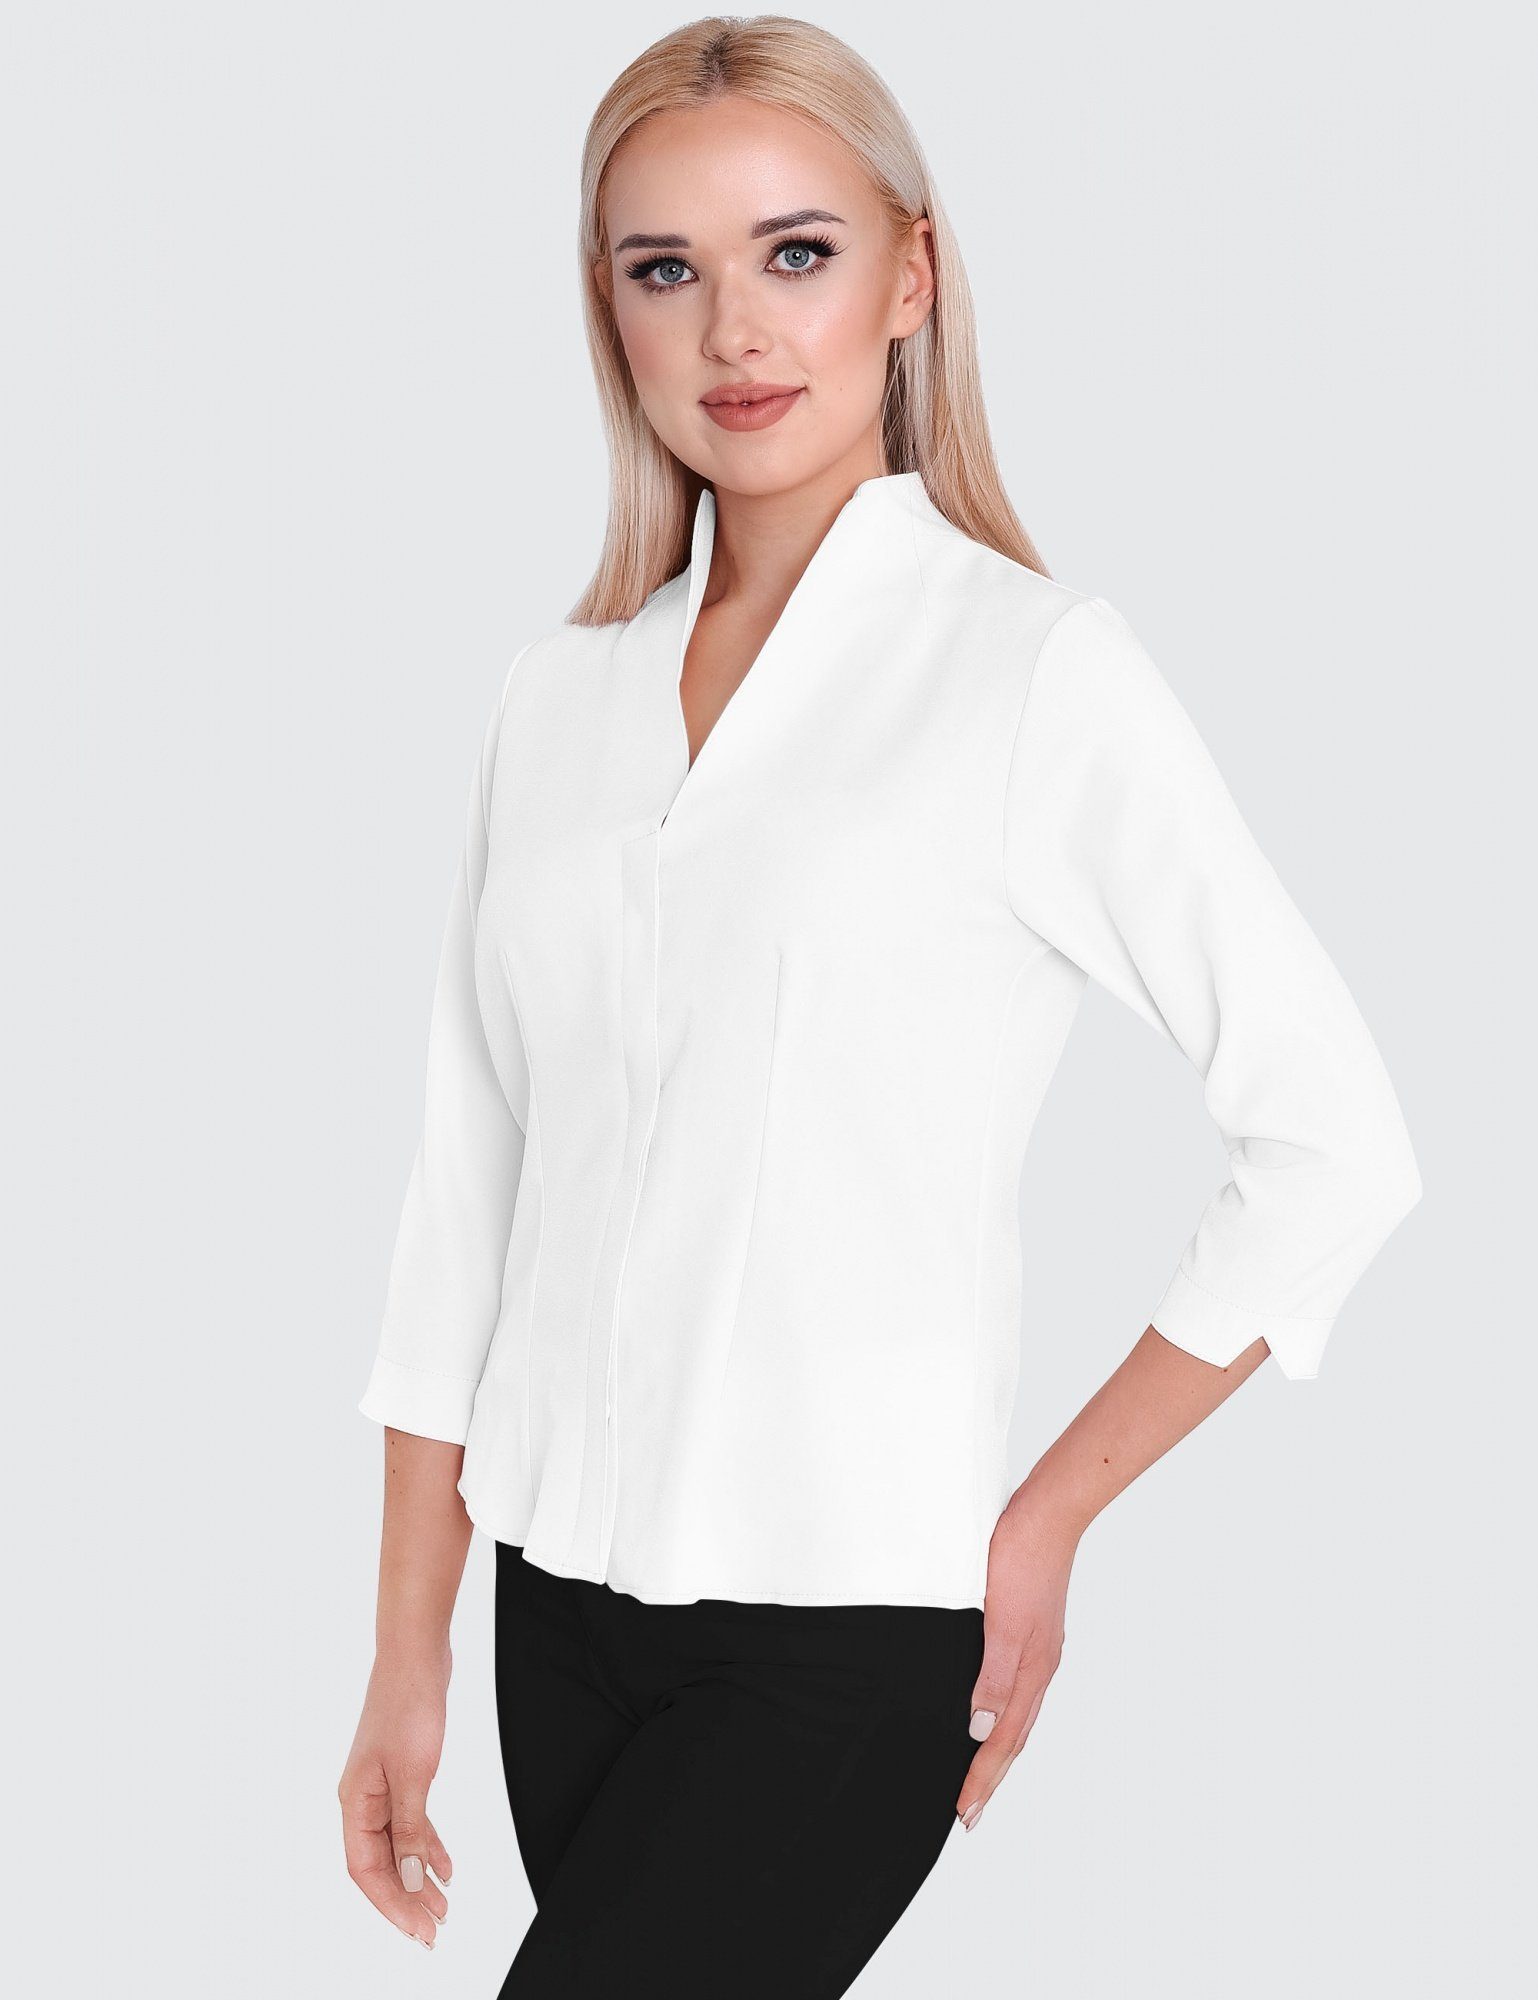 Kelchkragen, HEVENTON Business-Bluse 3/4-Ärmel, Bluse mit Klassische bügelleicht Weiß